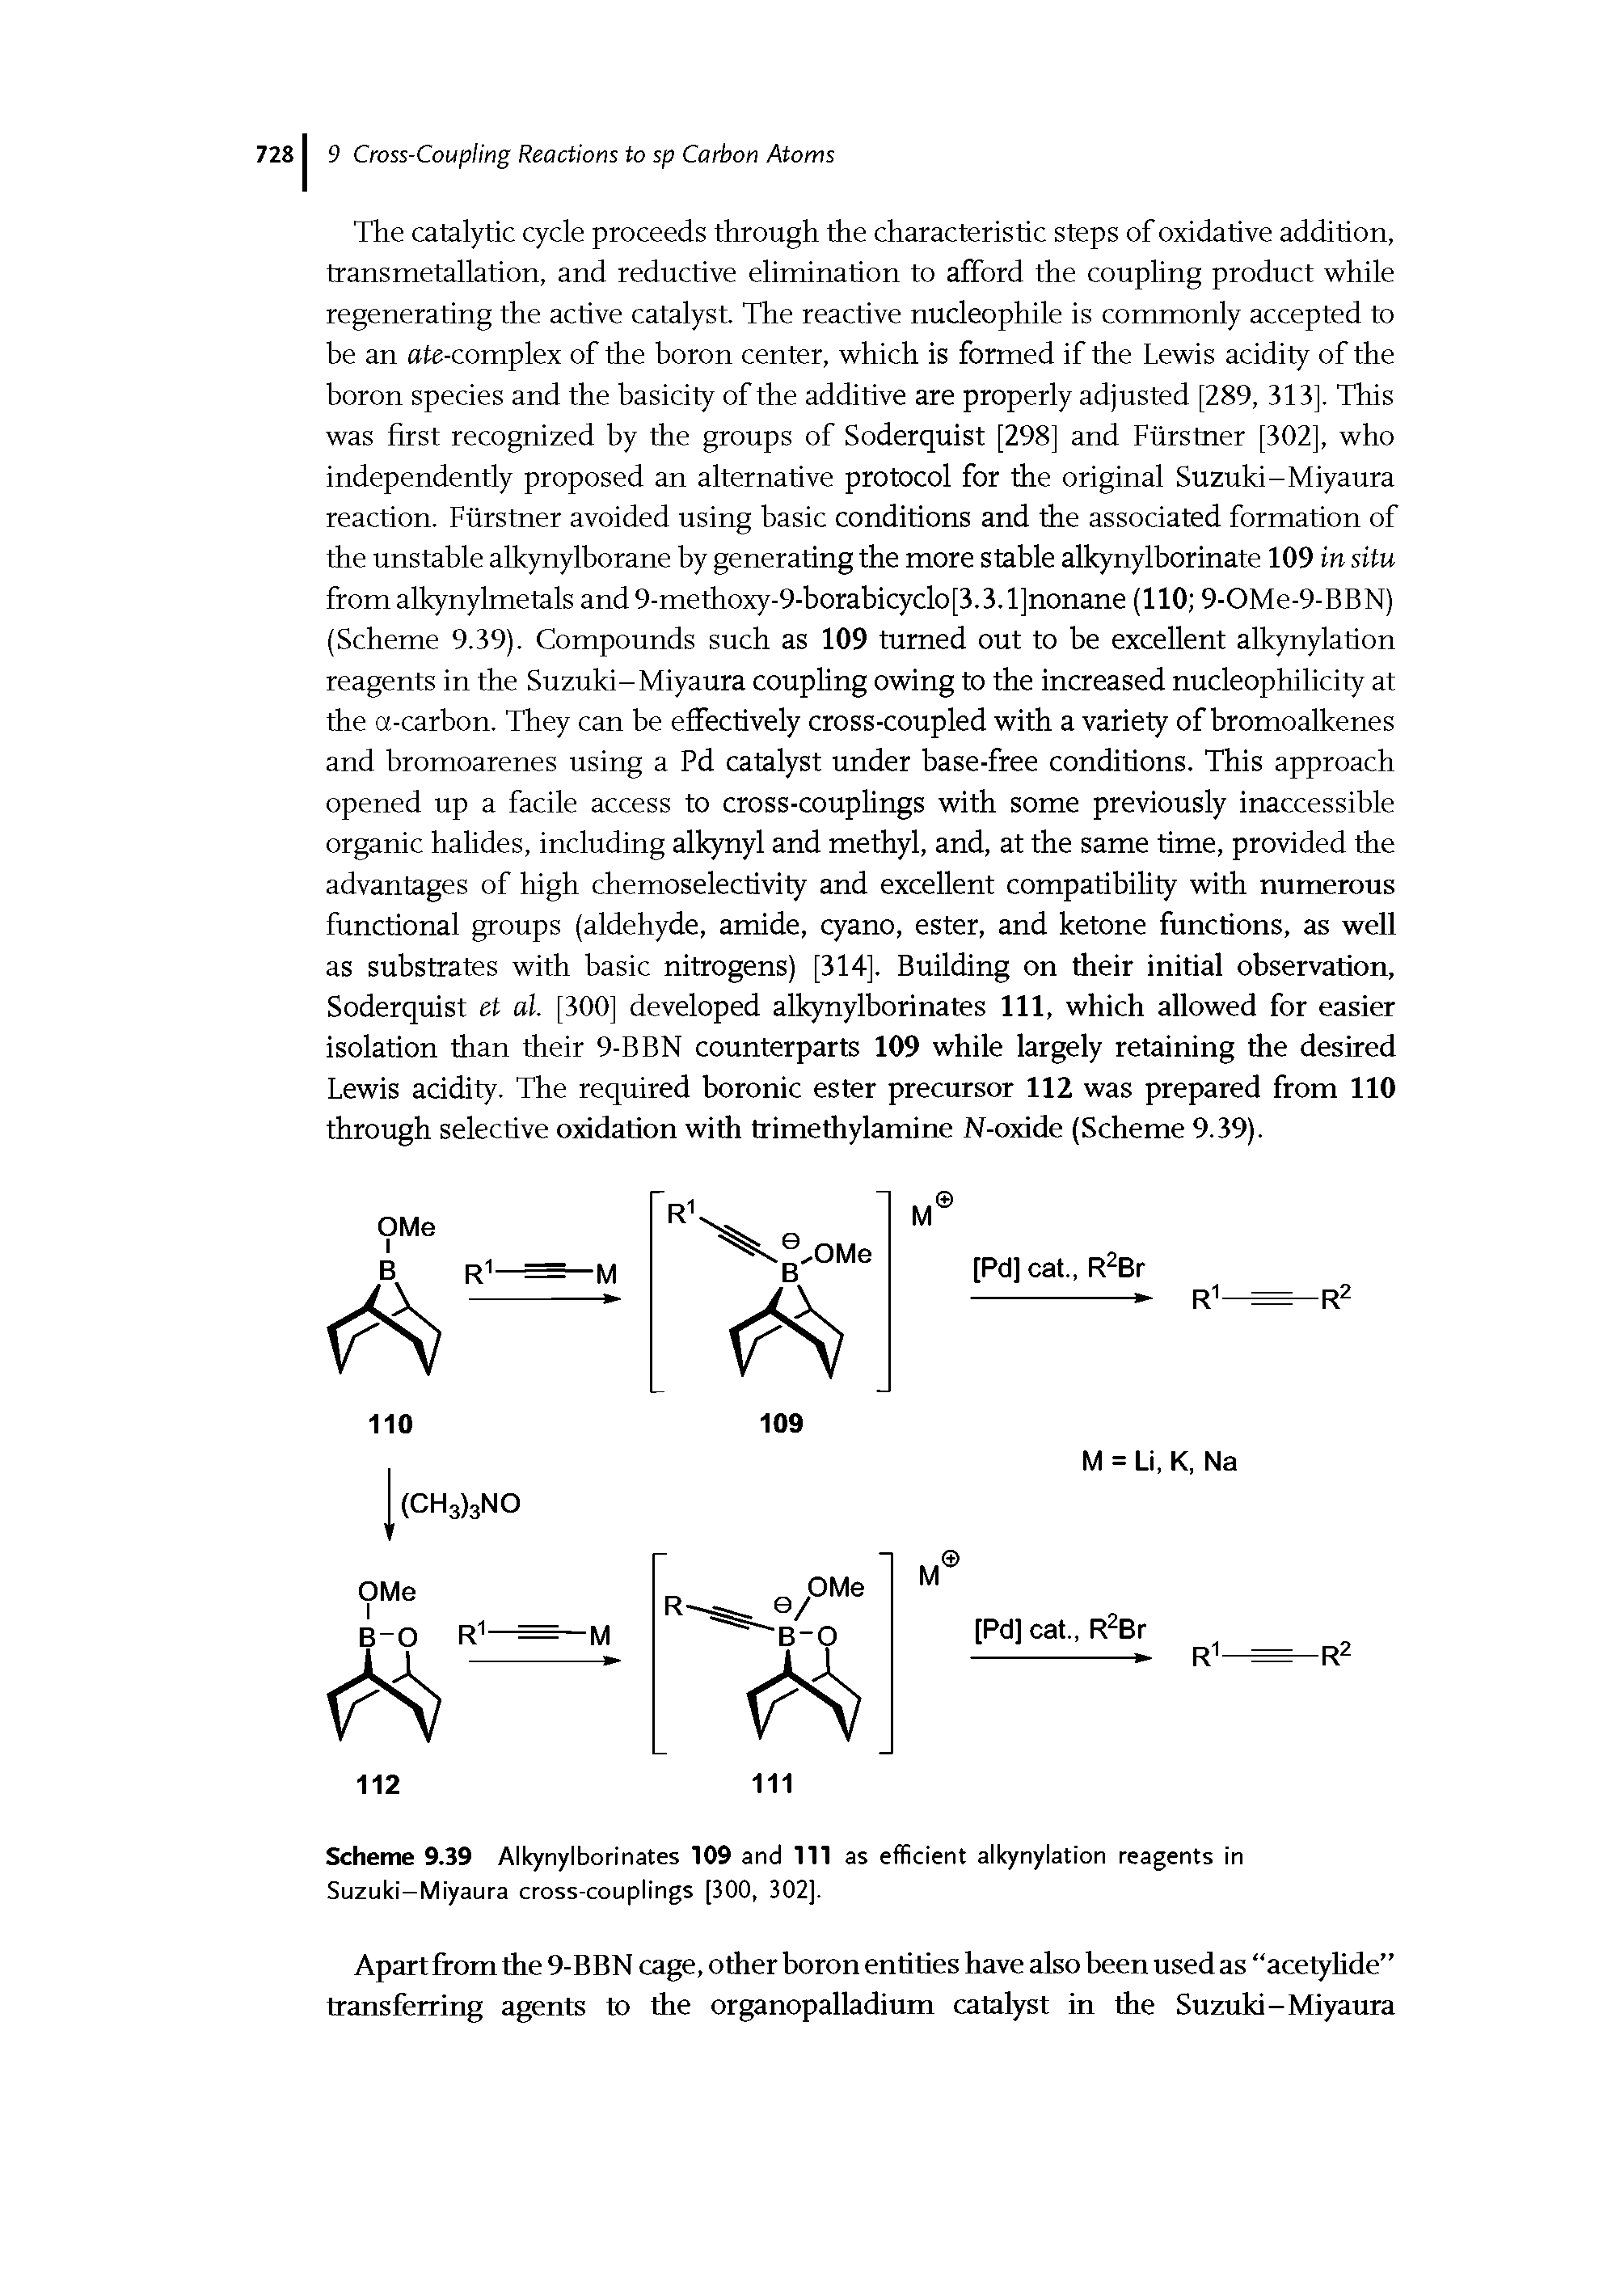 Scheme 9.39 Alkynylborinates 109 and 111 as efficient alkynylation reagents in Suzuki-Miyaura cross-couplings [300, 302].